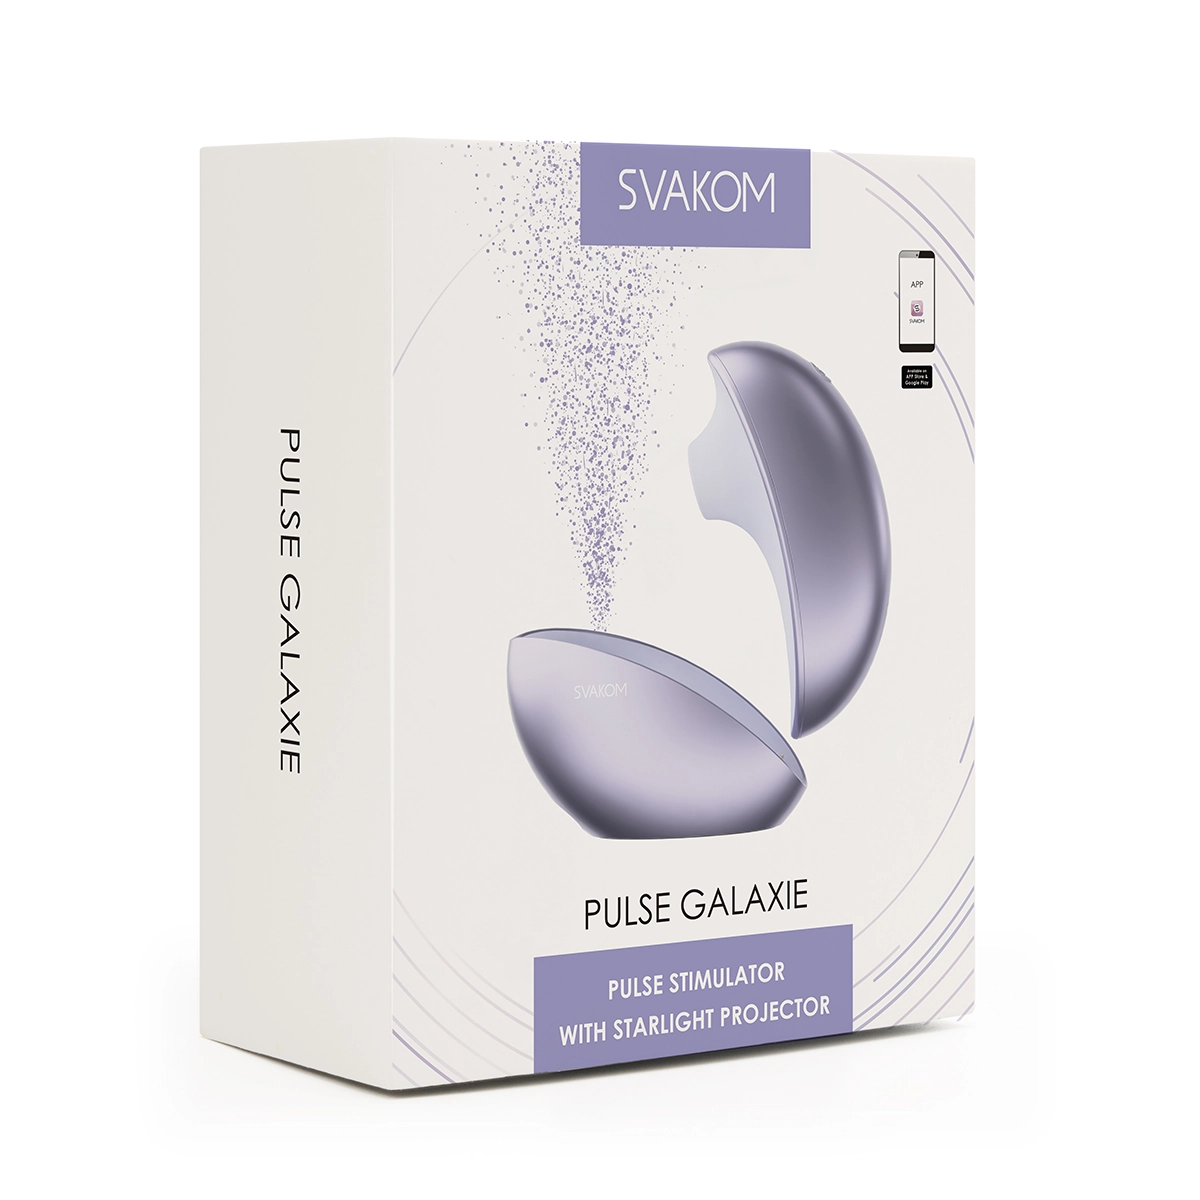 Mua Svakom Pulse Galaxie phát sáng máy bú hút thổi kích thích âm vật kết nối App có tốt không?